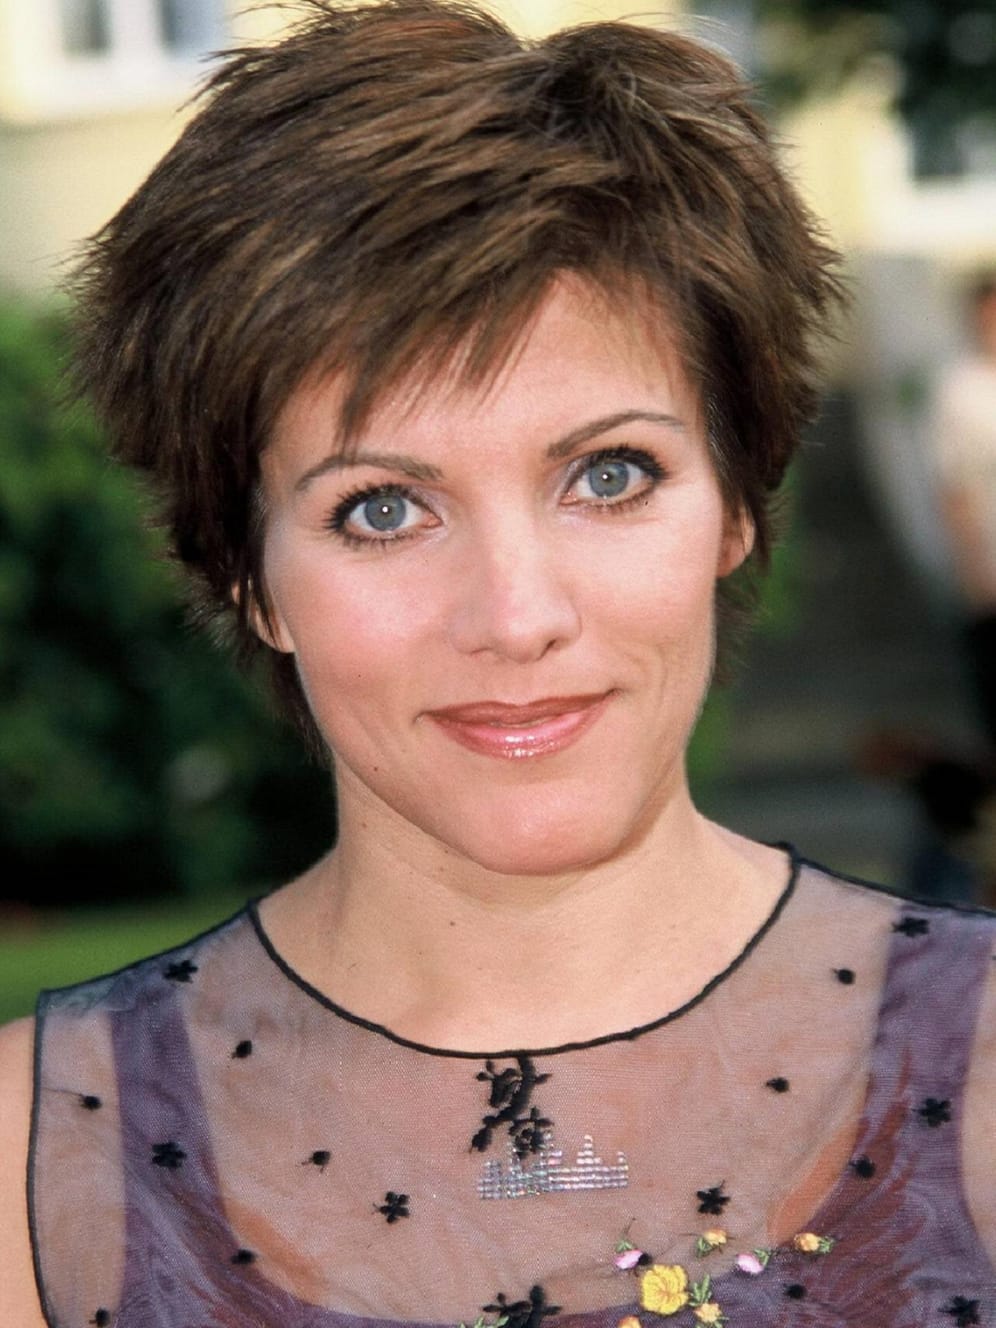 2001: Birgit Schrowange